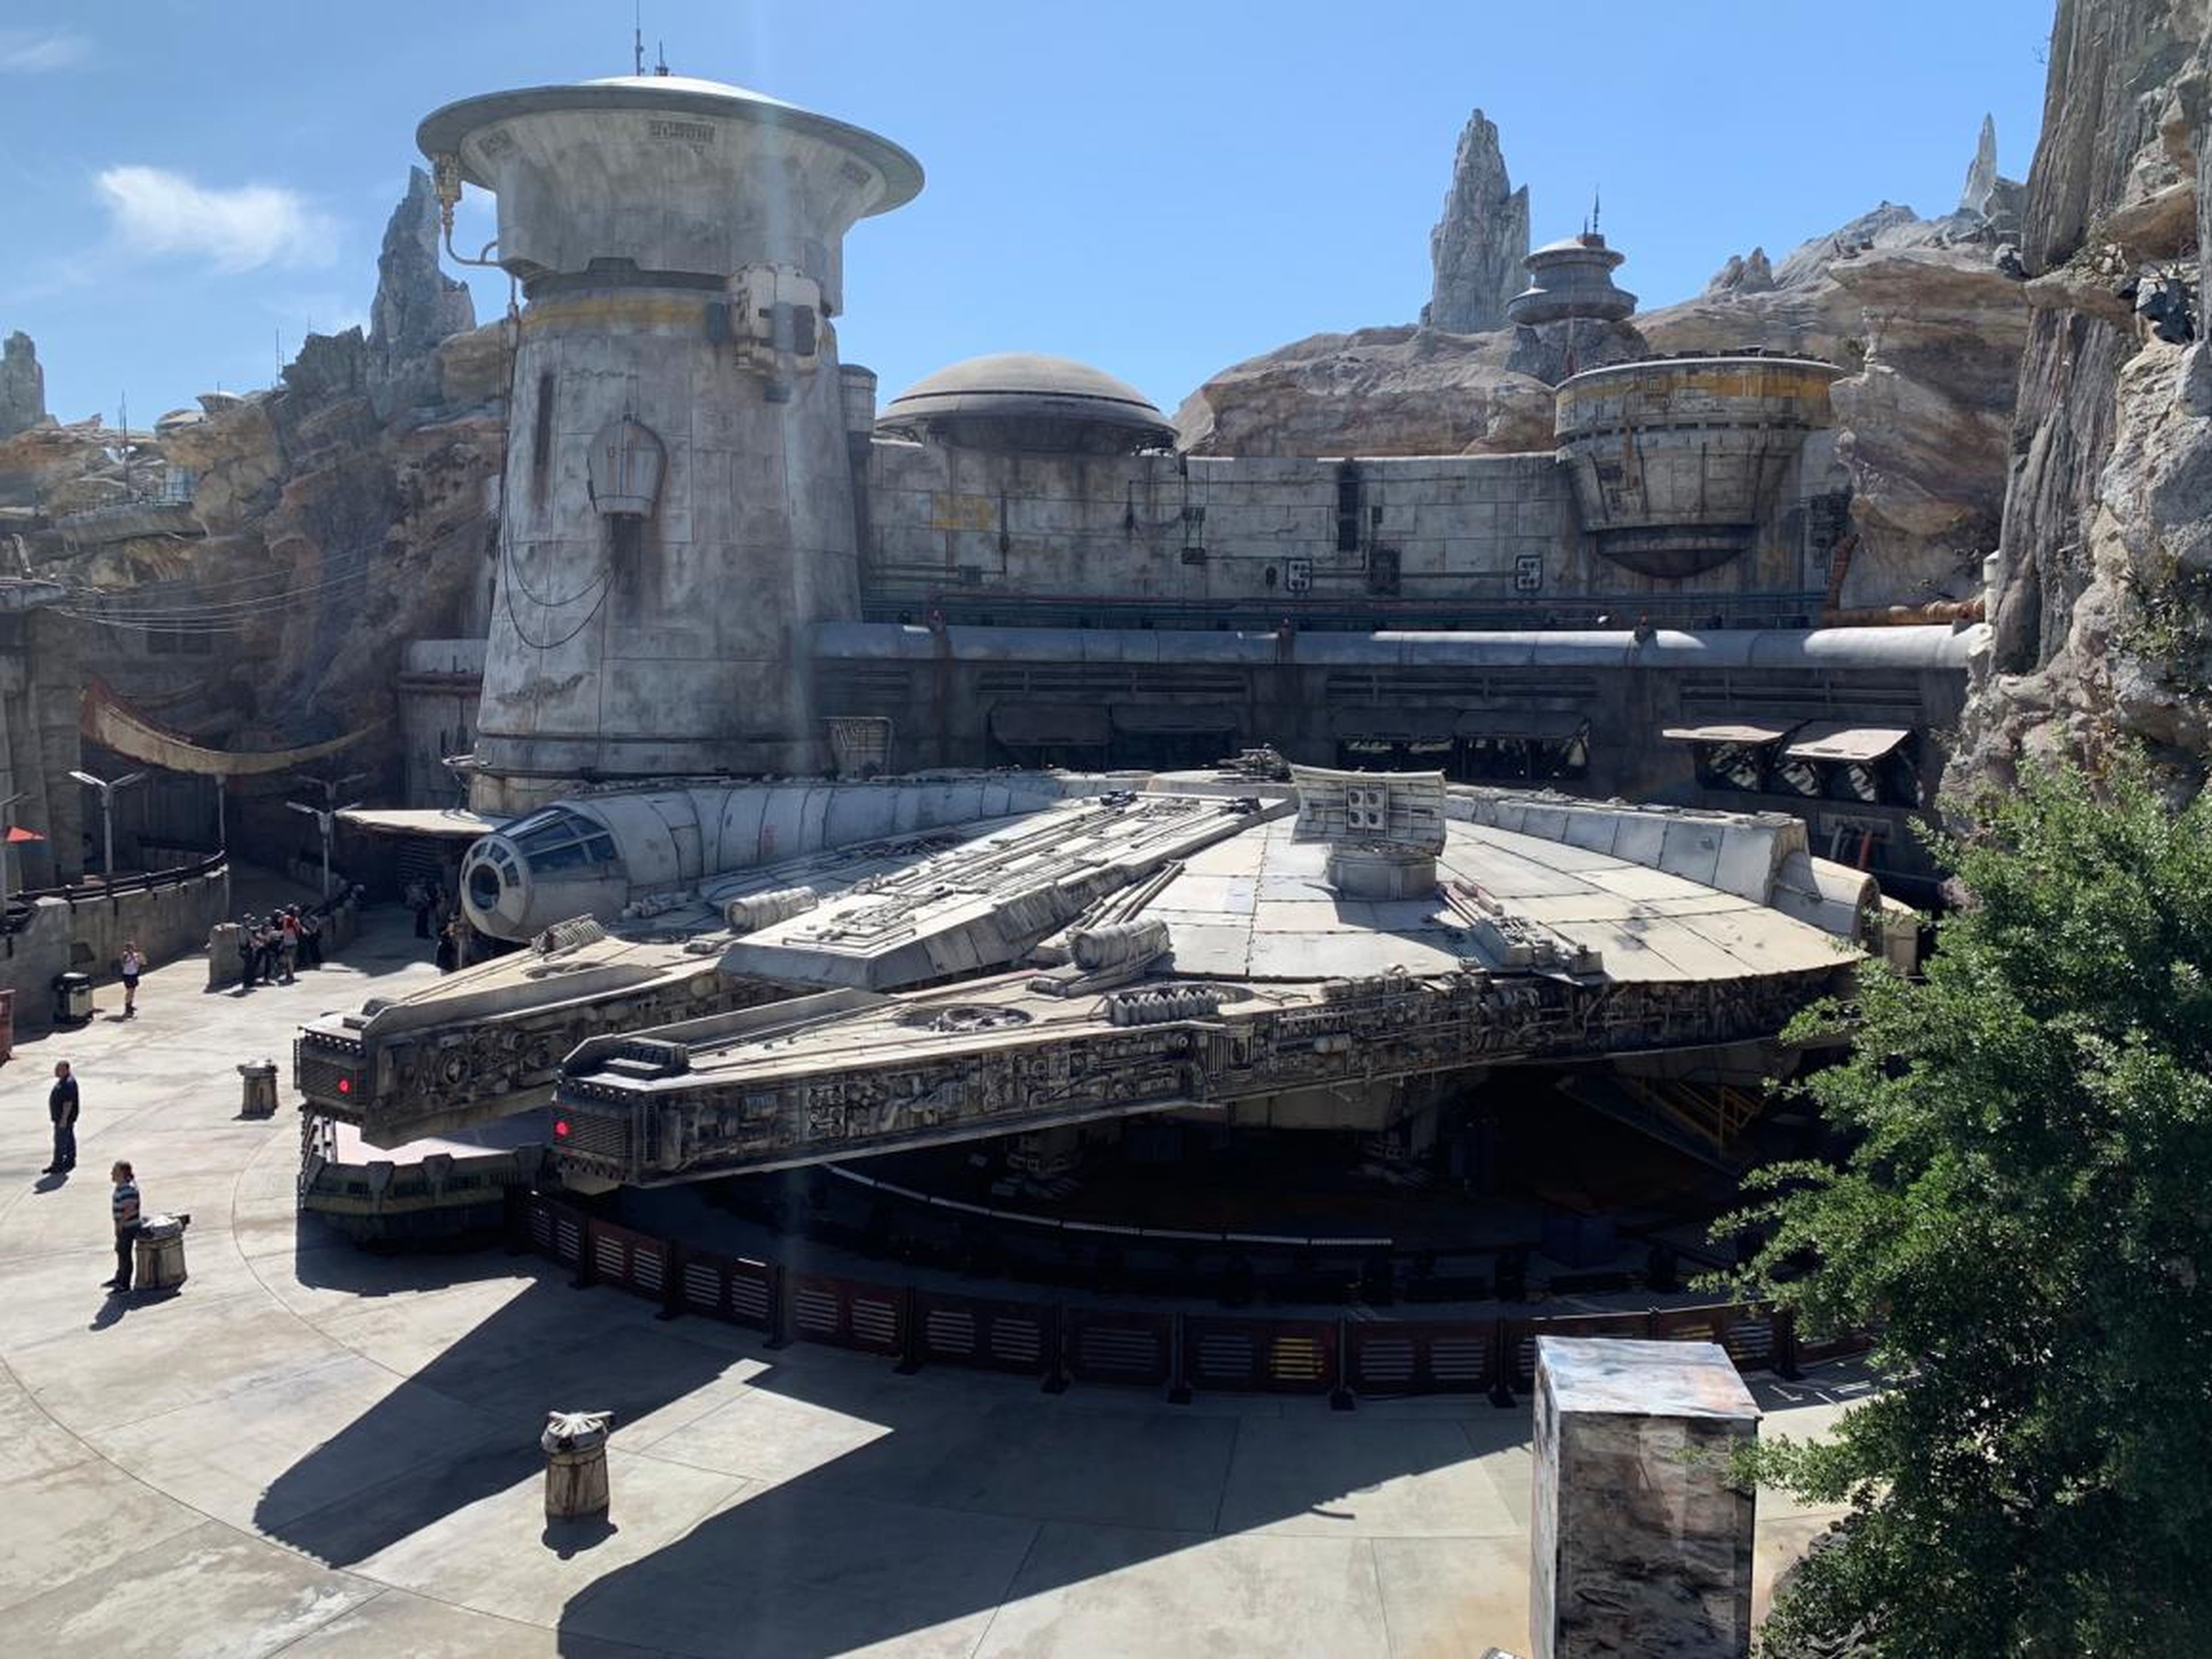 INSIDER obtuvo una vista previa de la nueva tierra de Disneylandia, Star Wars: Galaxy's Edge.